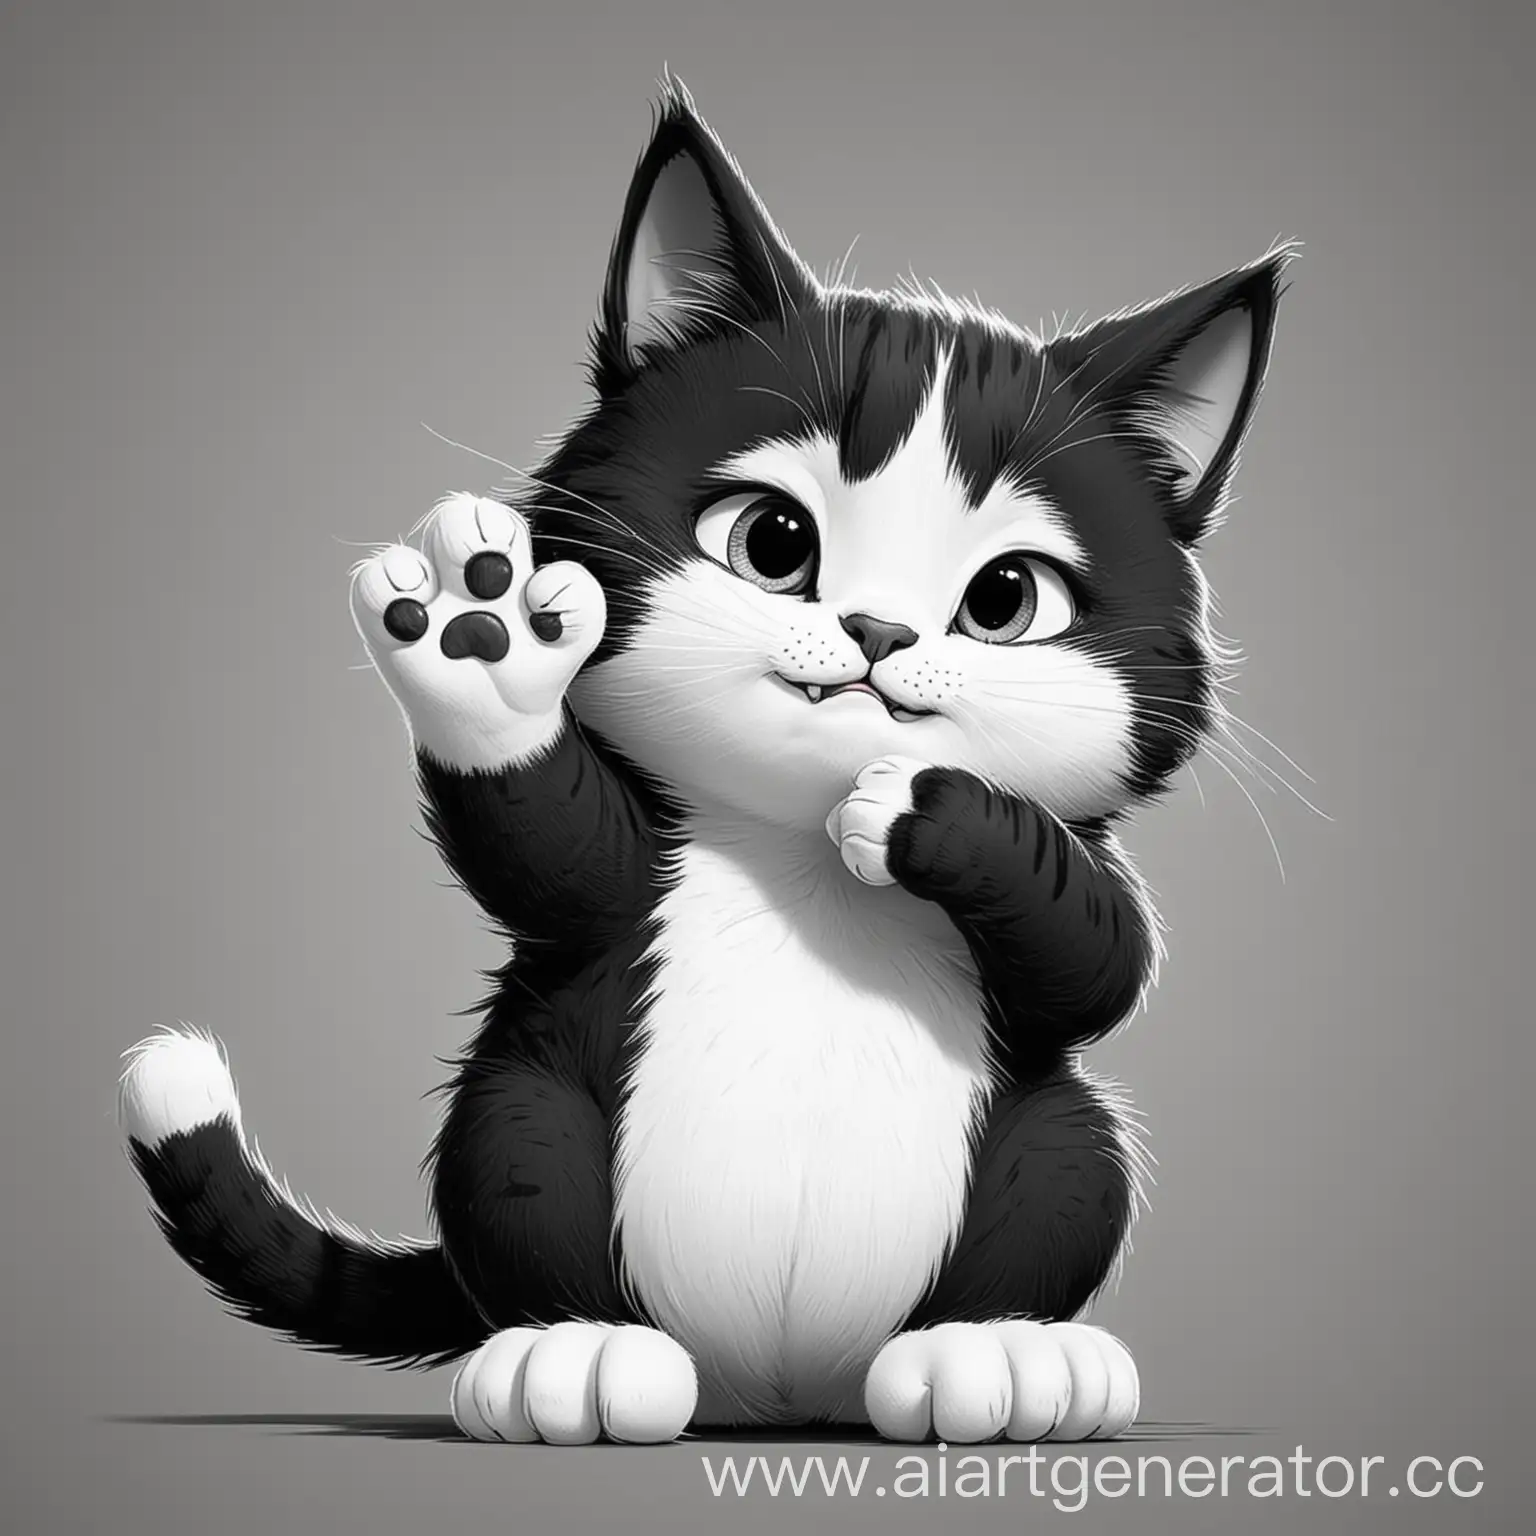 мультяшный кот в черно-белом цвете вылизывает ногу, кот похож на кота саймона